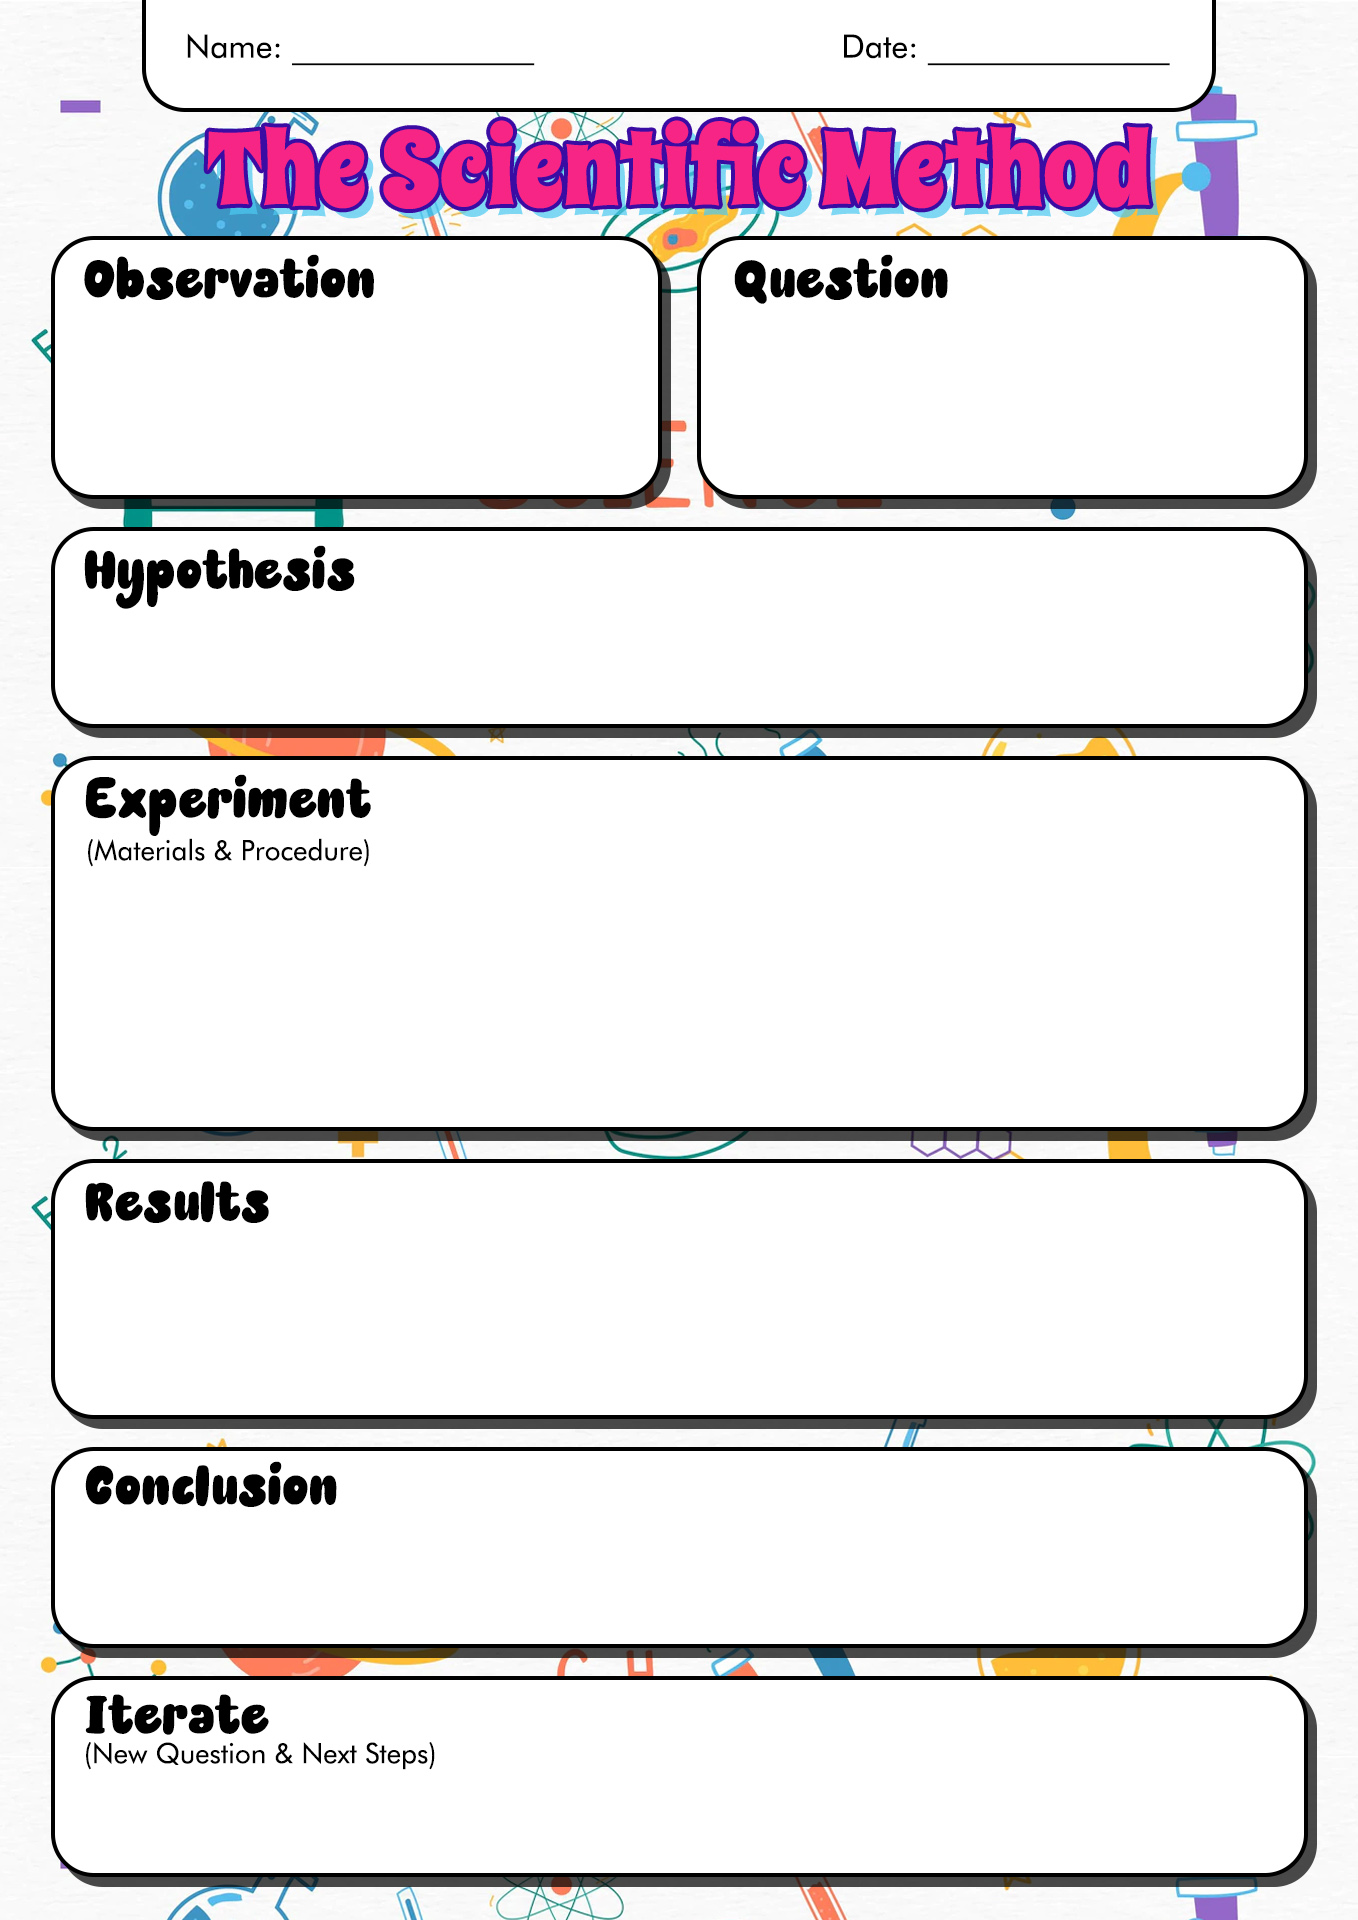 Scientific Method Examples Worksheet